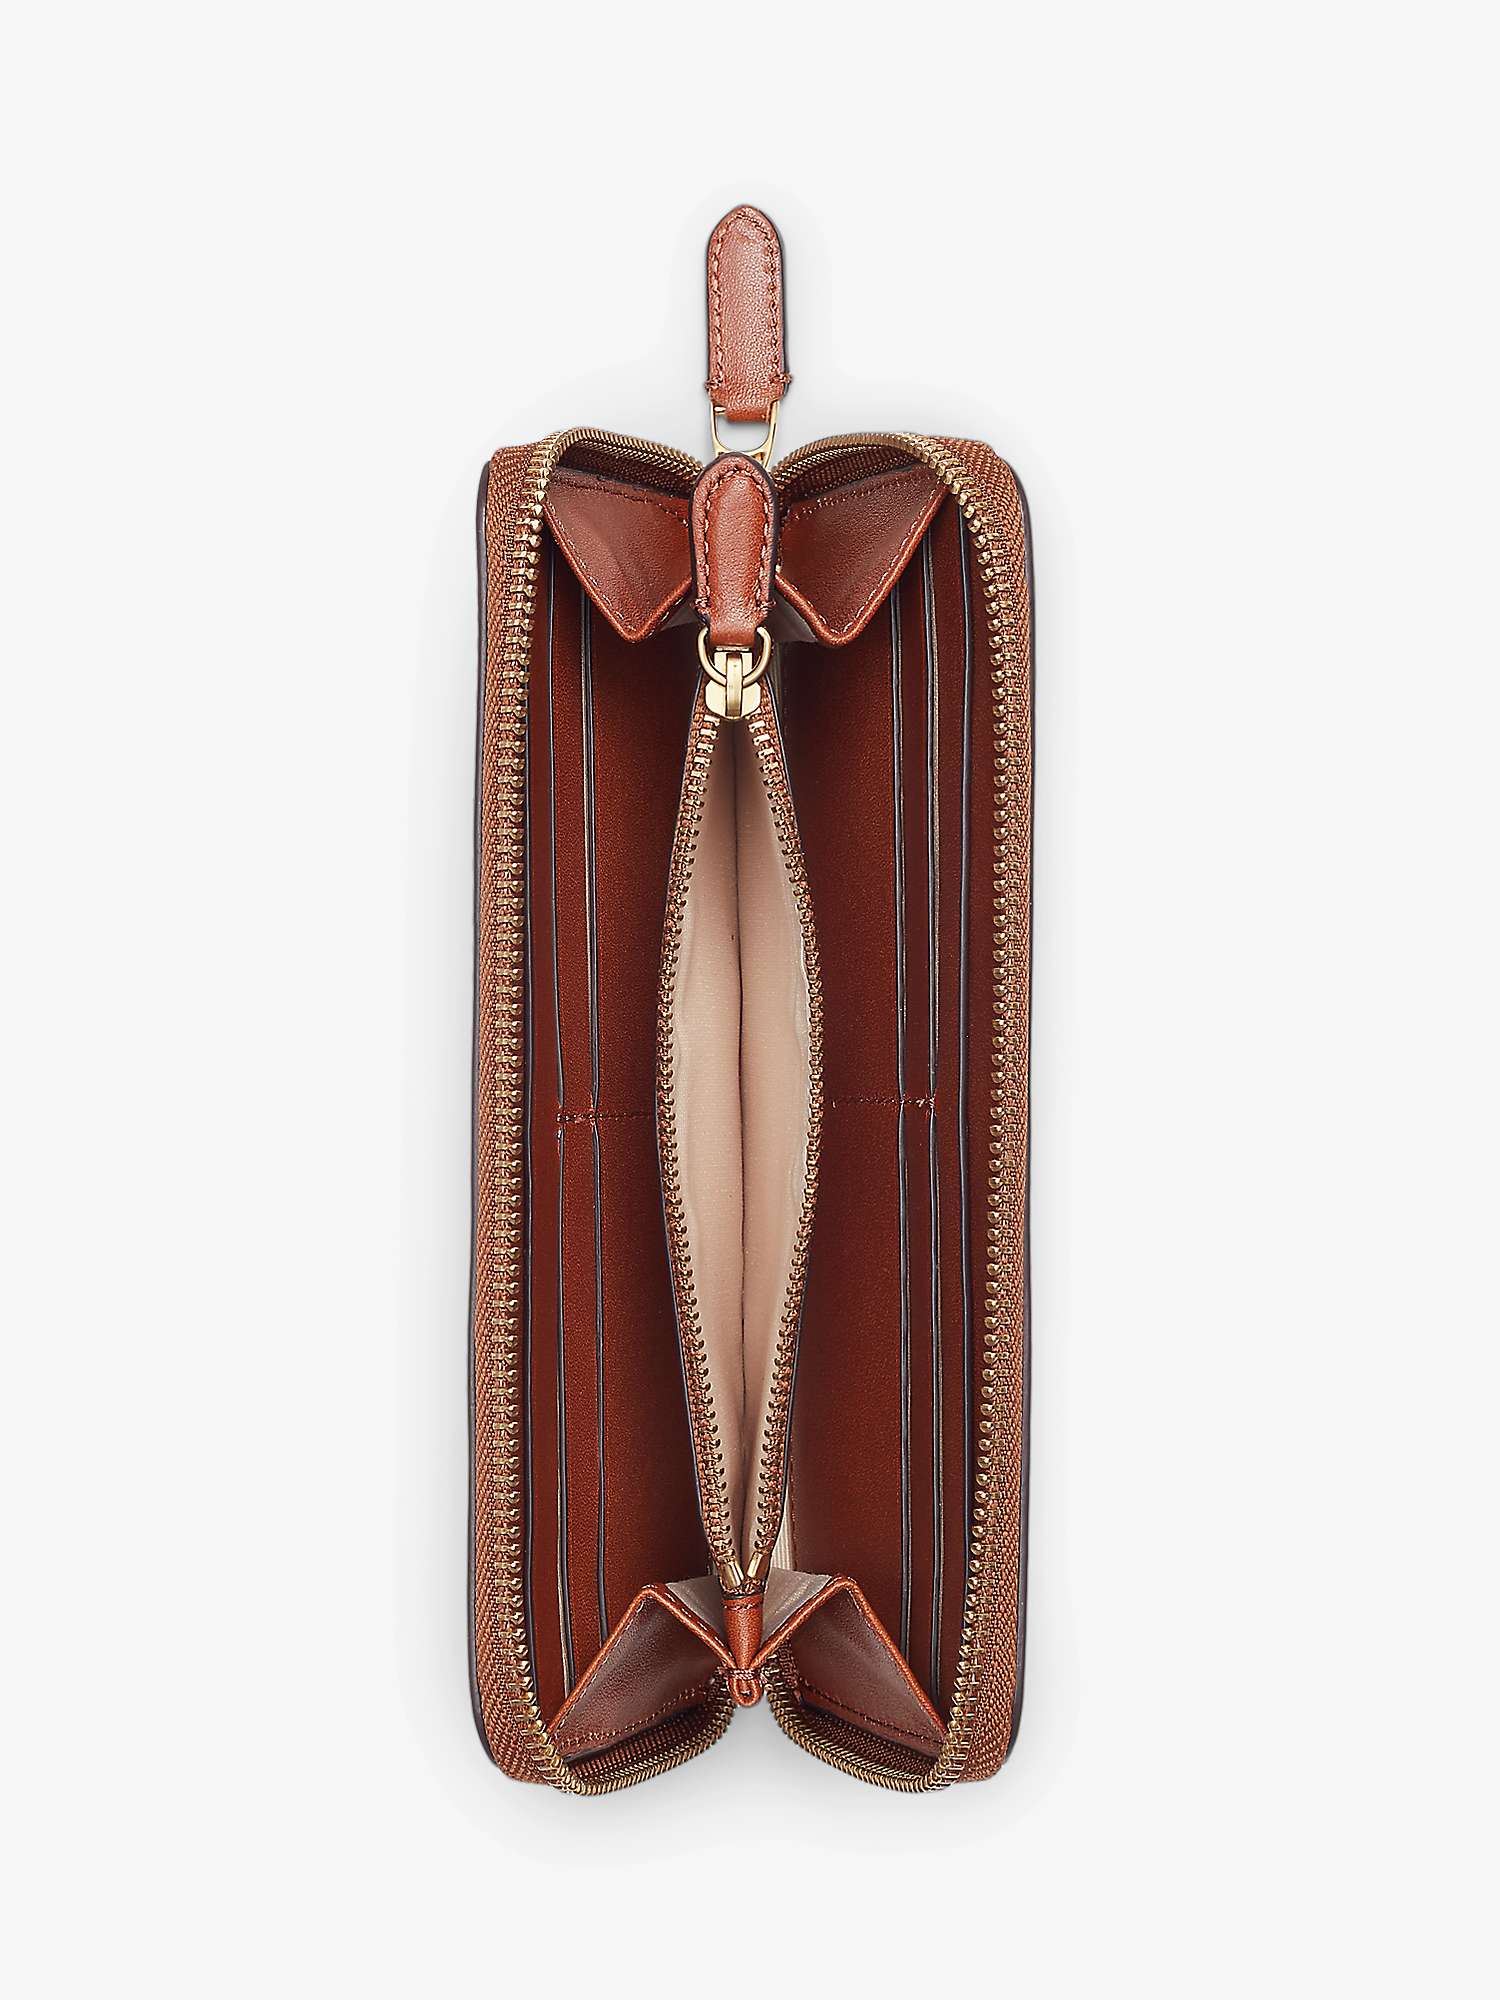 Buy Lauren Ralph Lauren Continental Leather Zip Purse Online at johnlewis.com